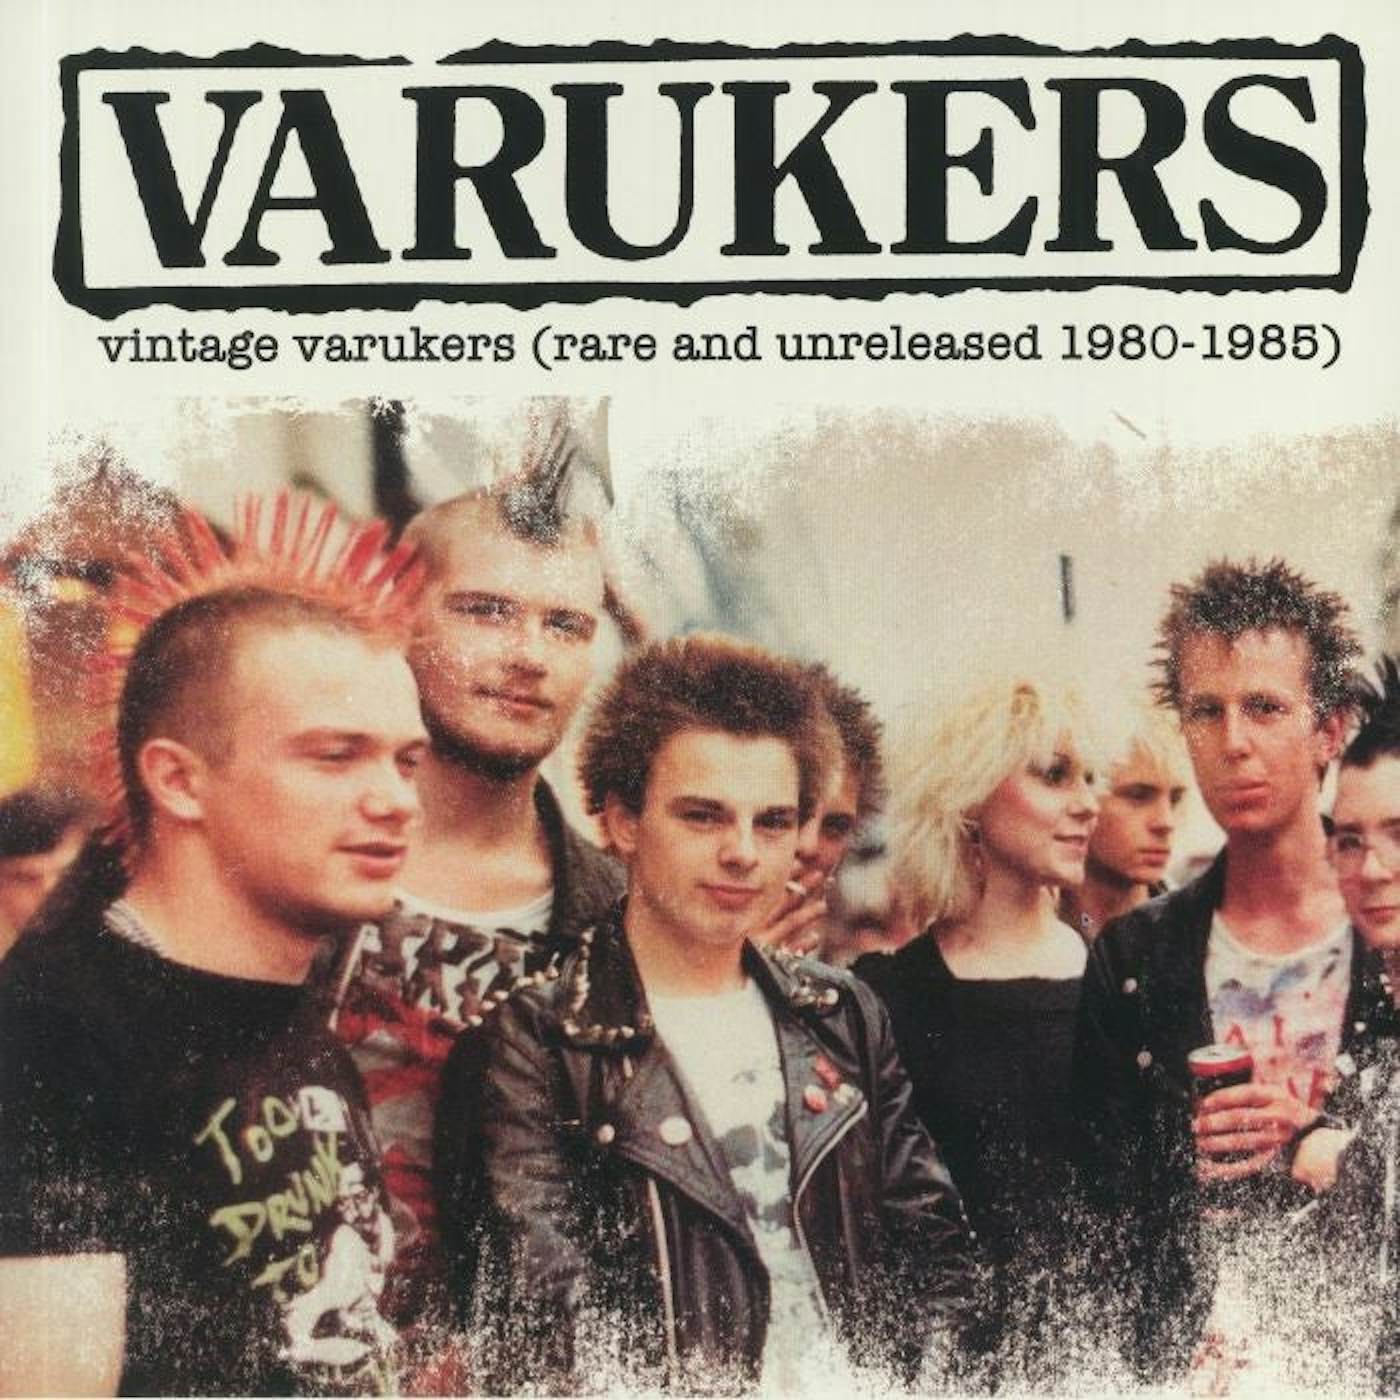 The Varukers LP Vinyl Record - Vintage Varukers (Rare & Unrealsed 19 80-19 85)